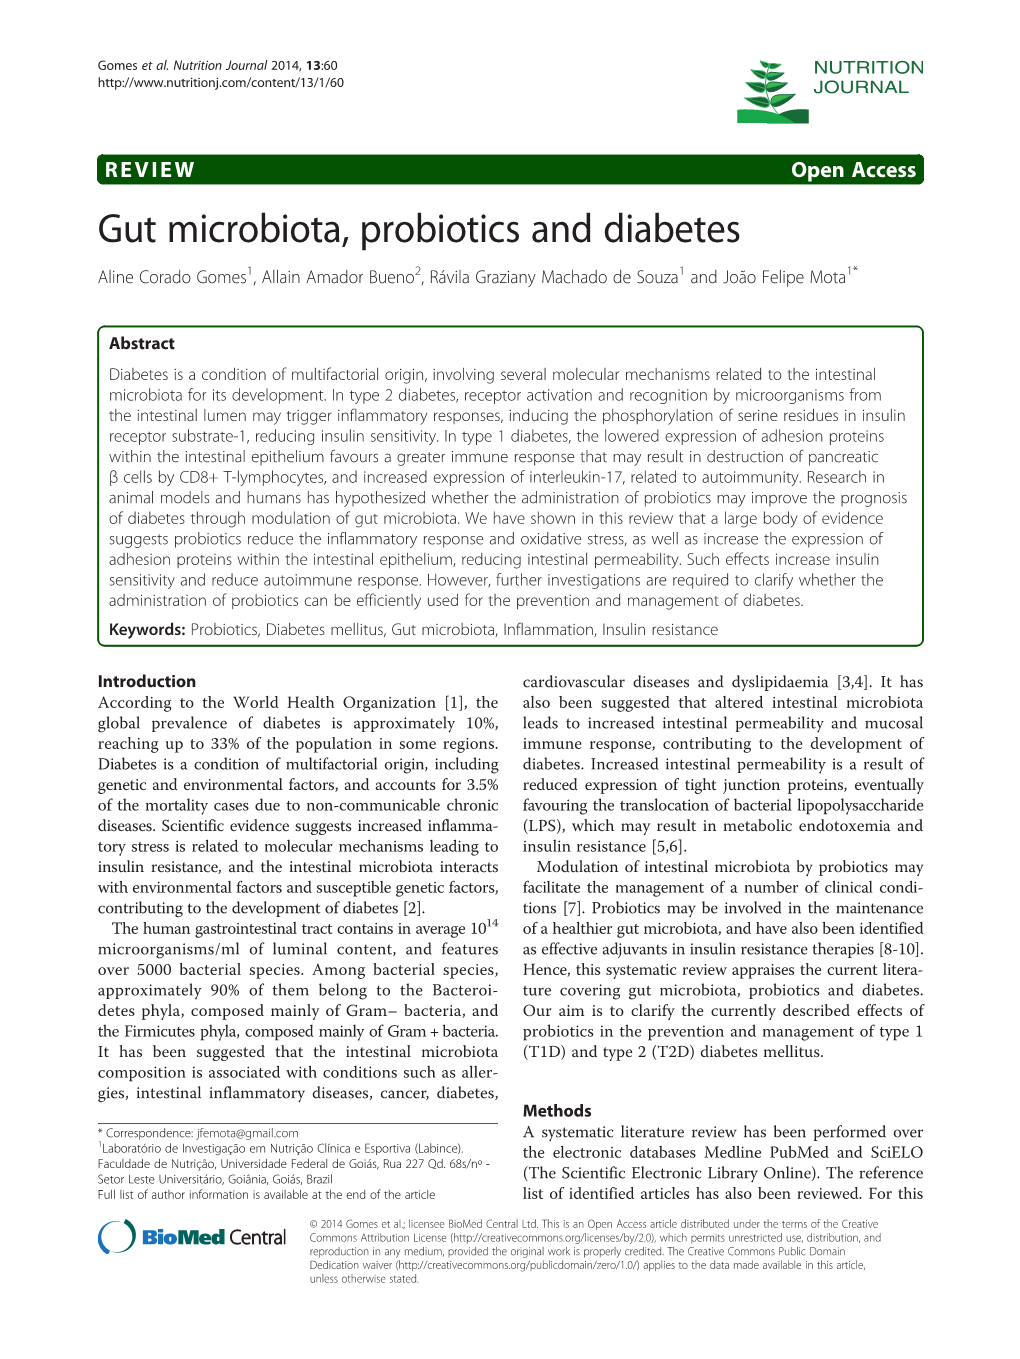 Gut Microbiota, Probiotics and Diabetes Aline Corado Gomes1, Allain Amador Bueno2, Rávila Graziany Machado De Souza1 and João Felipe Mota1*